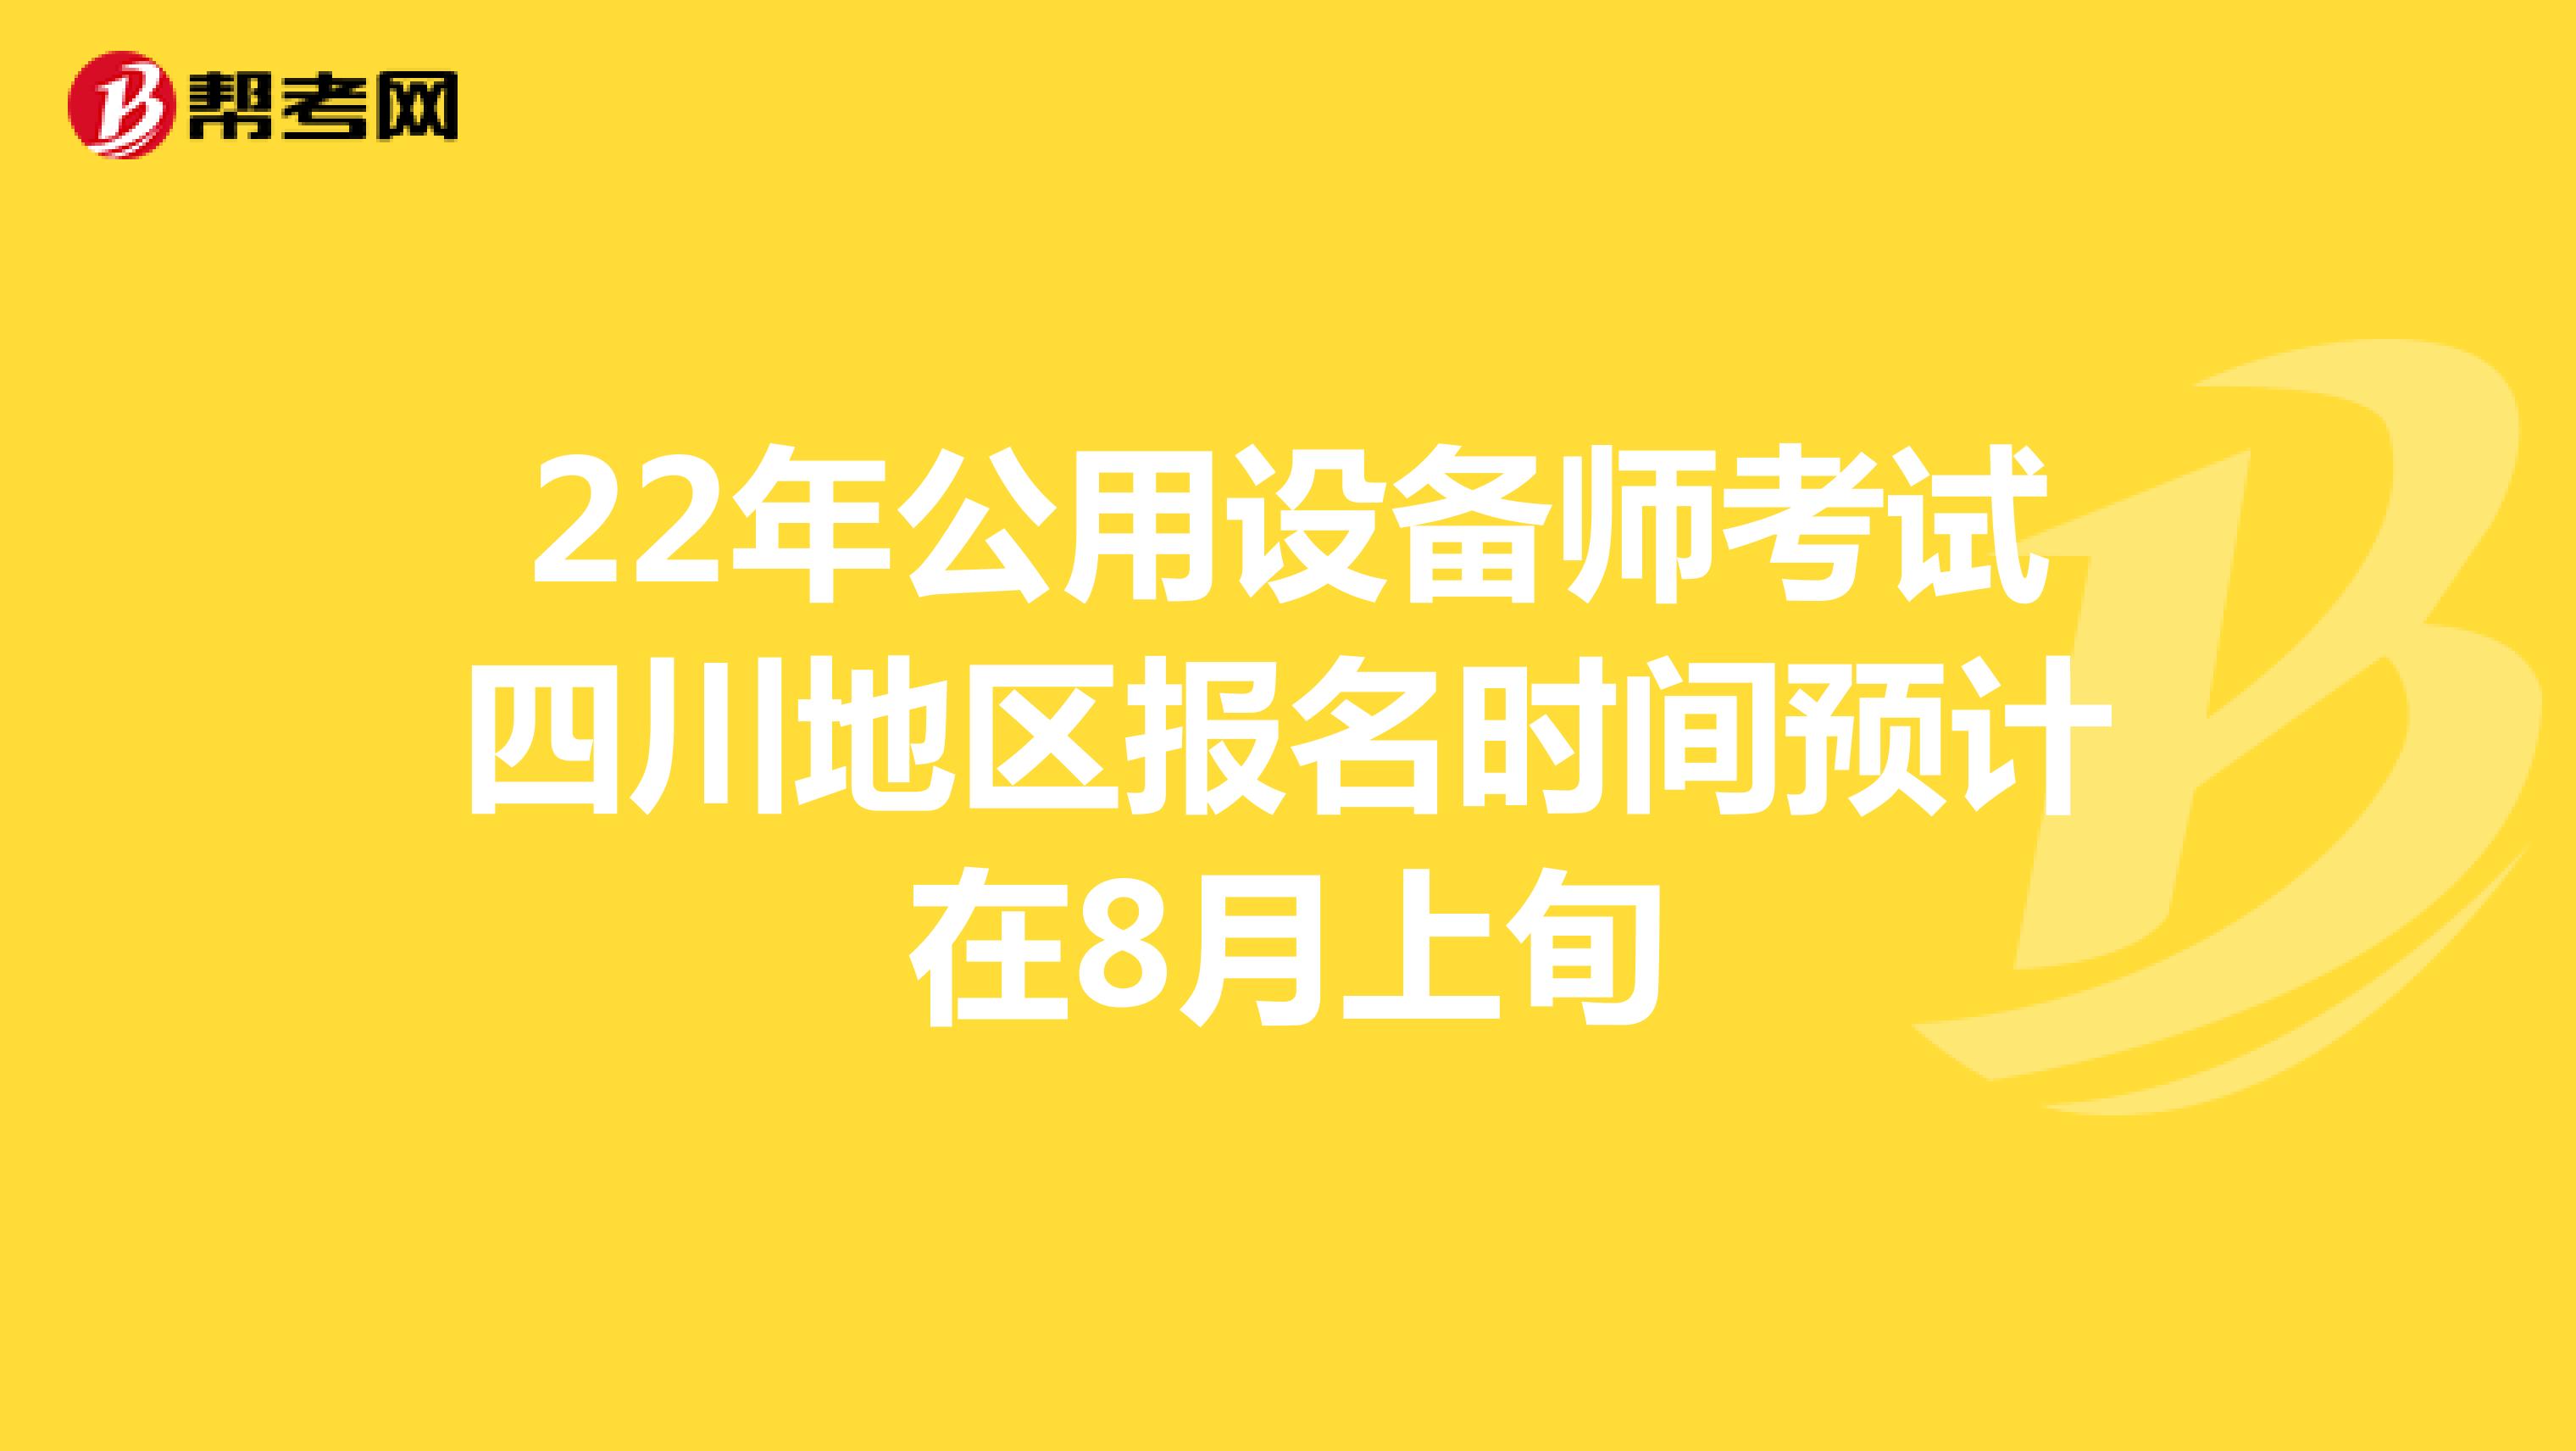 22年公用设备师考试四川地区报名时间预计在8月上旬